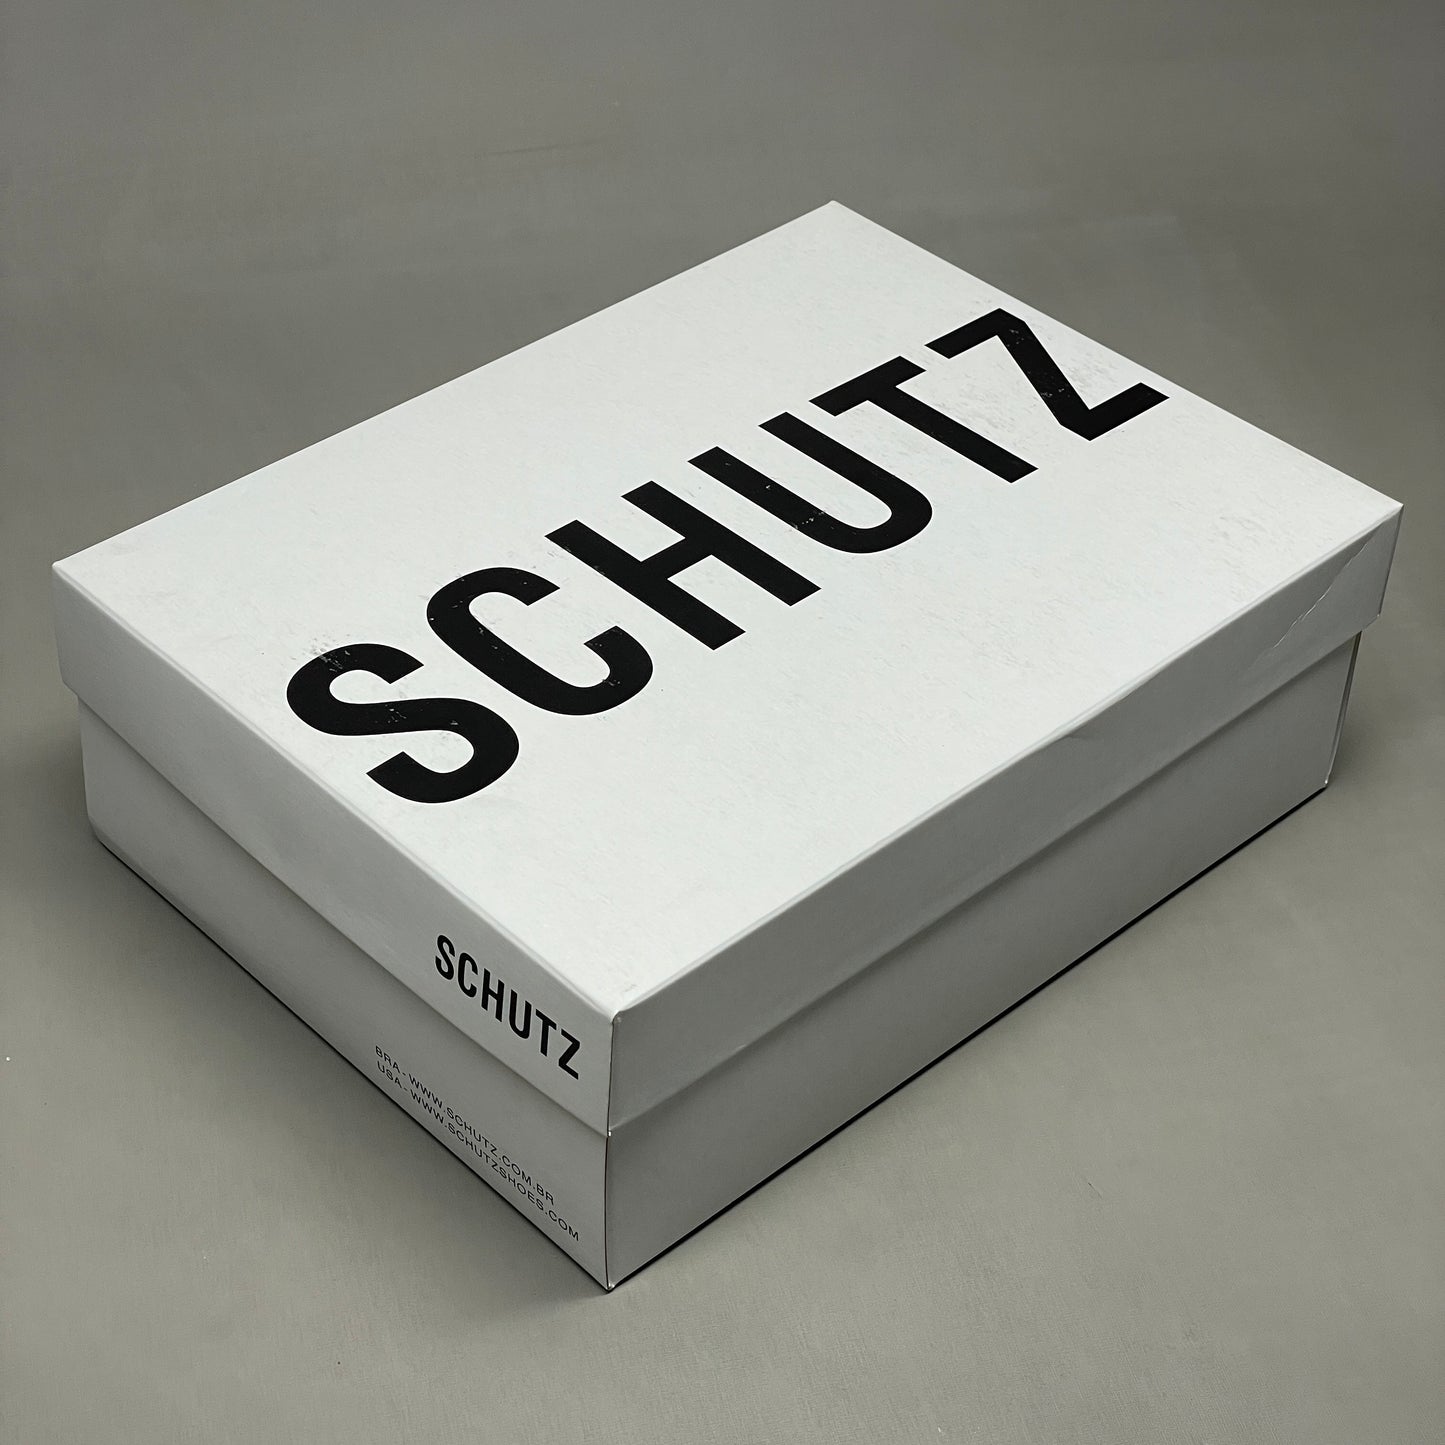 SCHUTZ Deonne Casual Deluxe Nappa Leather Sandal True Beige Sz 5 S013810172 (New)